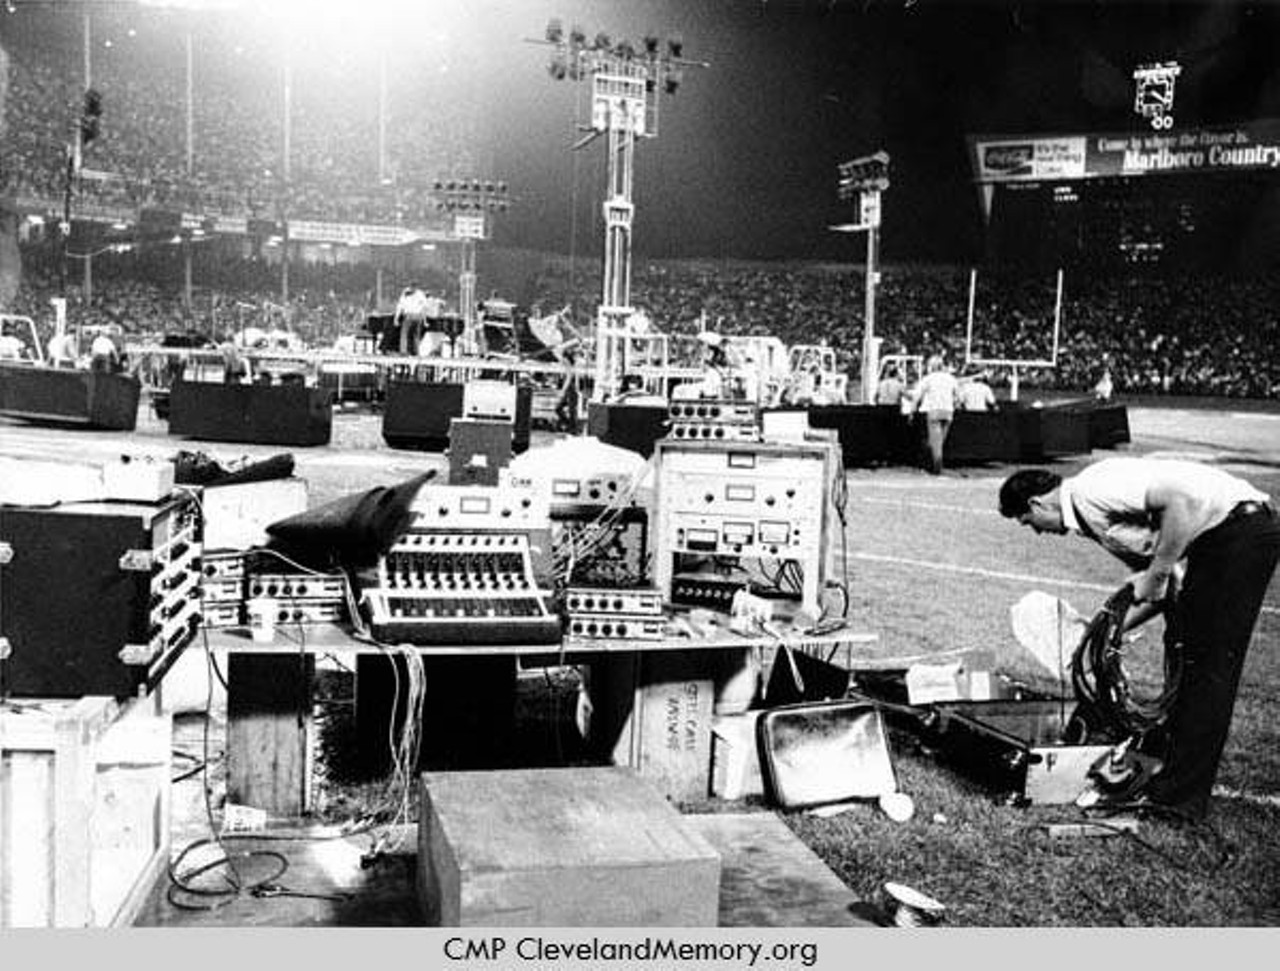  Taking Down Equipment, Municipal Stadium, 1972 